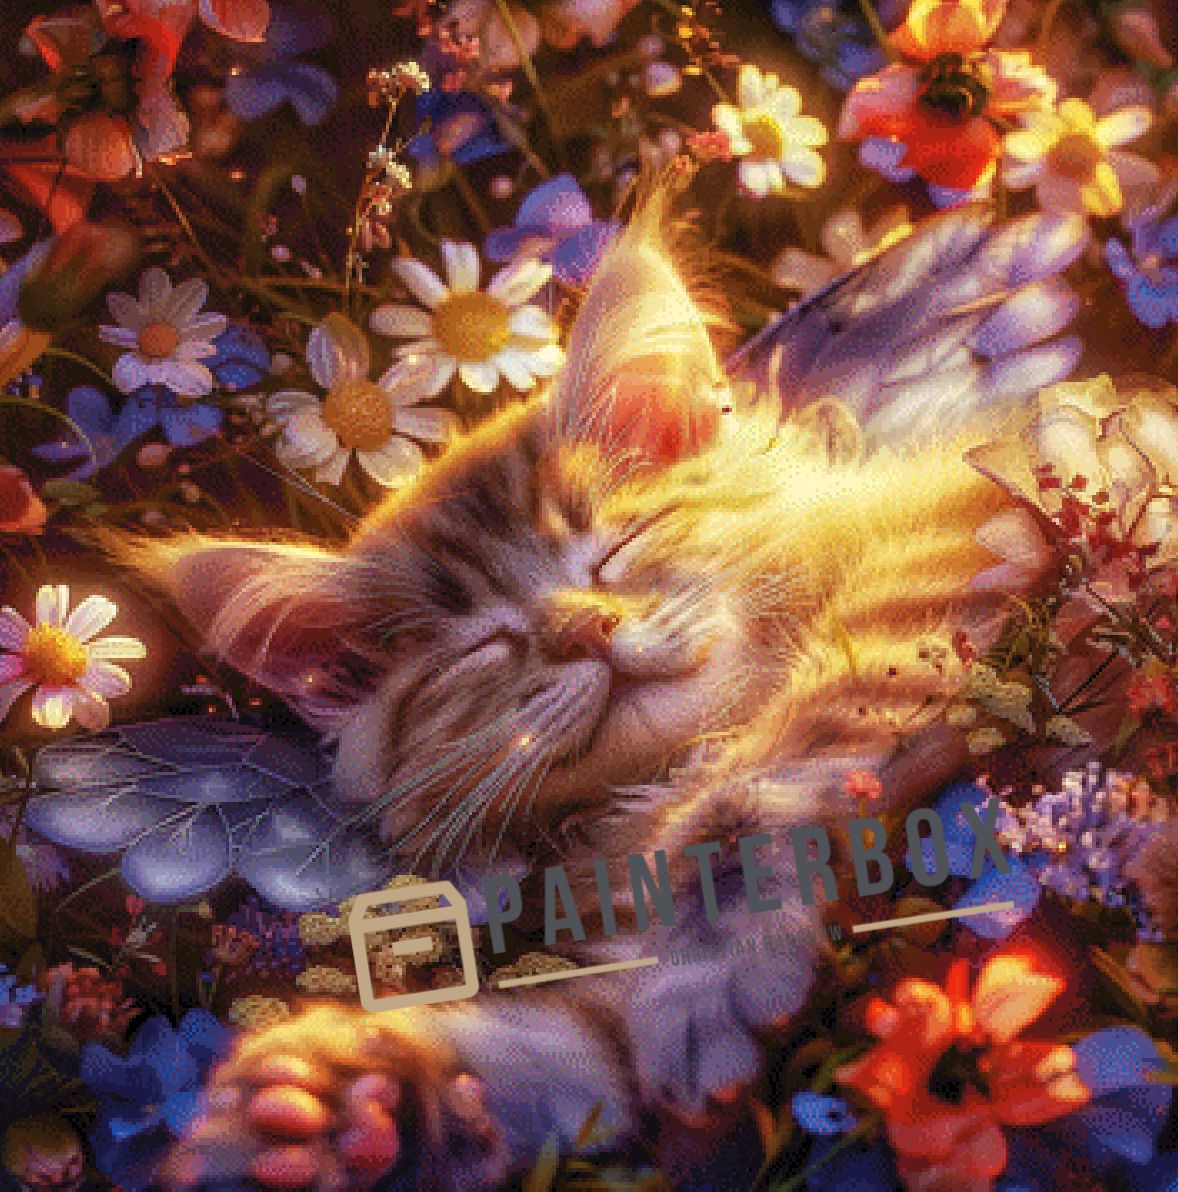 Lazy Cat by ellufija - 250 Farben